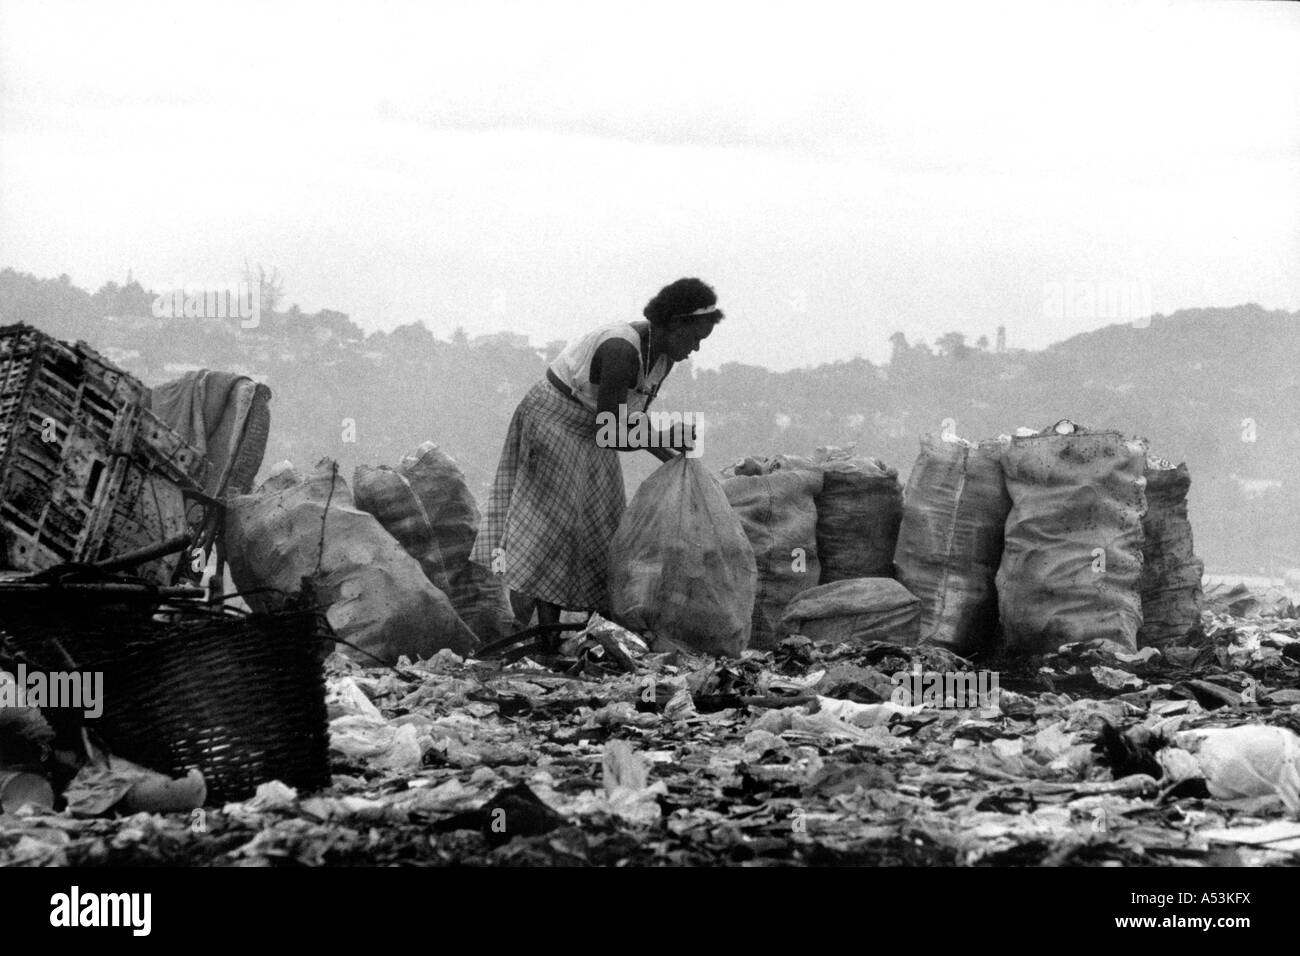 Painet ha1273 060 in bianco e nero la povertà donna raccolta di articoli vendibili garbage dump olinda pernambuco brasile paese Foto Stock